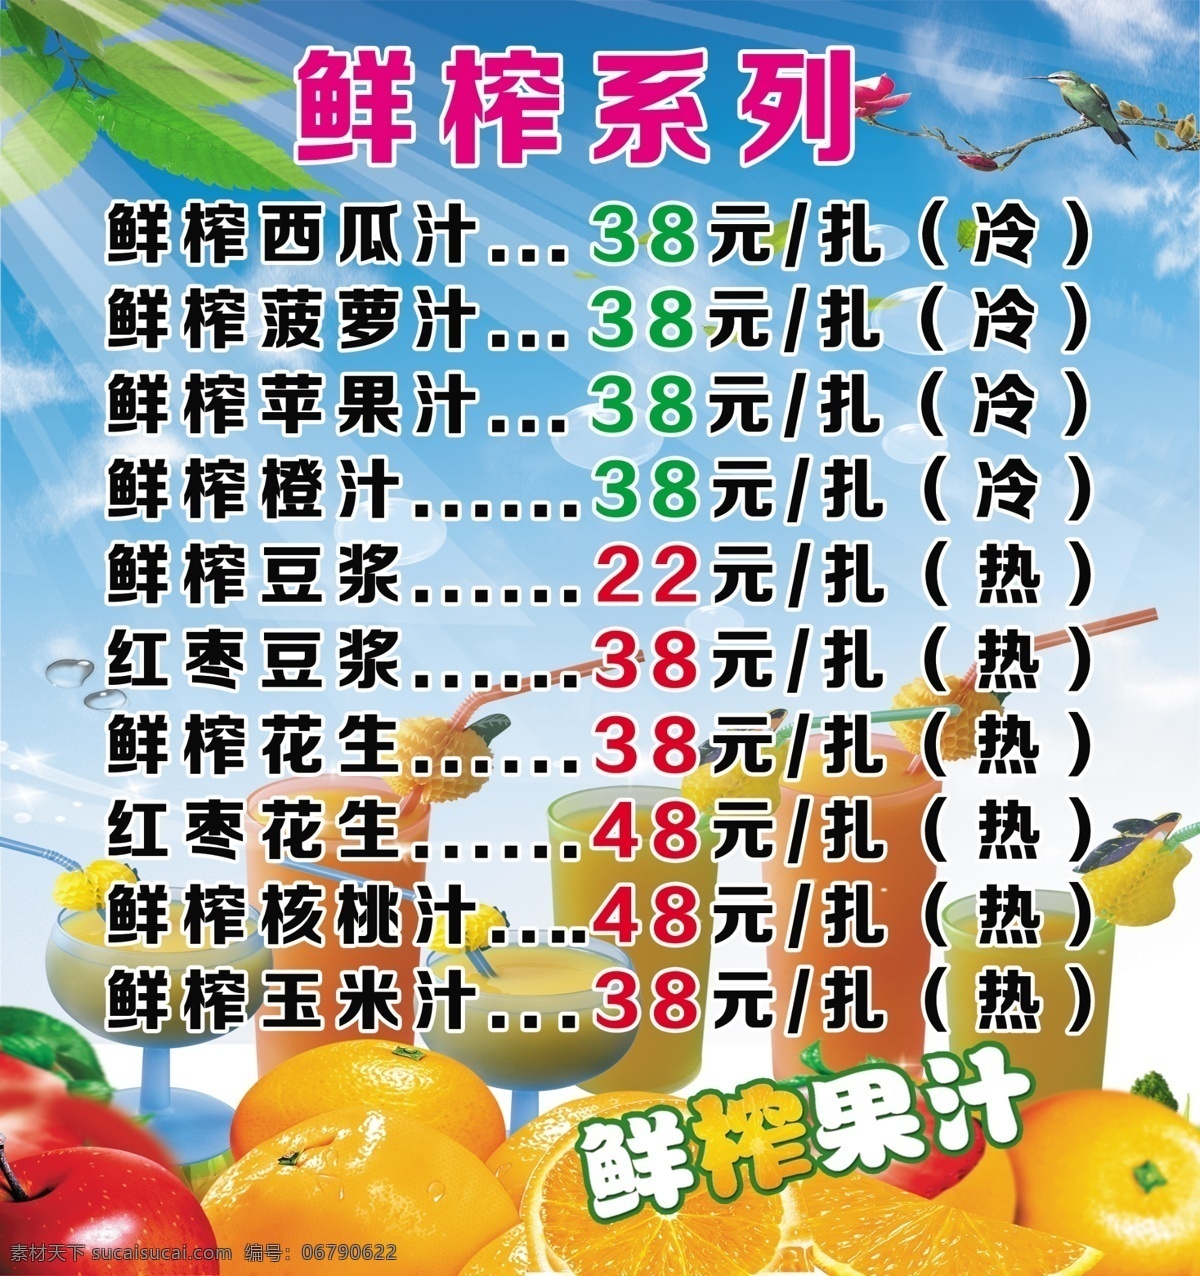 鲜榨果汁 水果背景 蓝色背景 清凉一夏 蓝色海报 水果海报 果汁海报